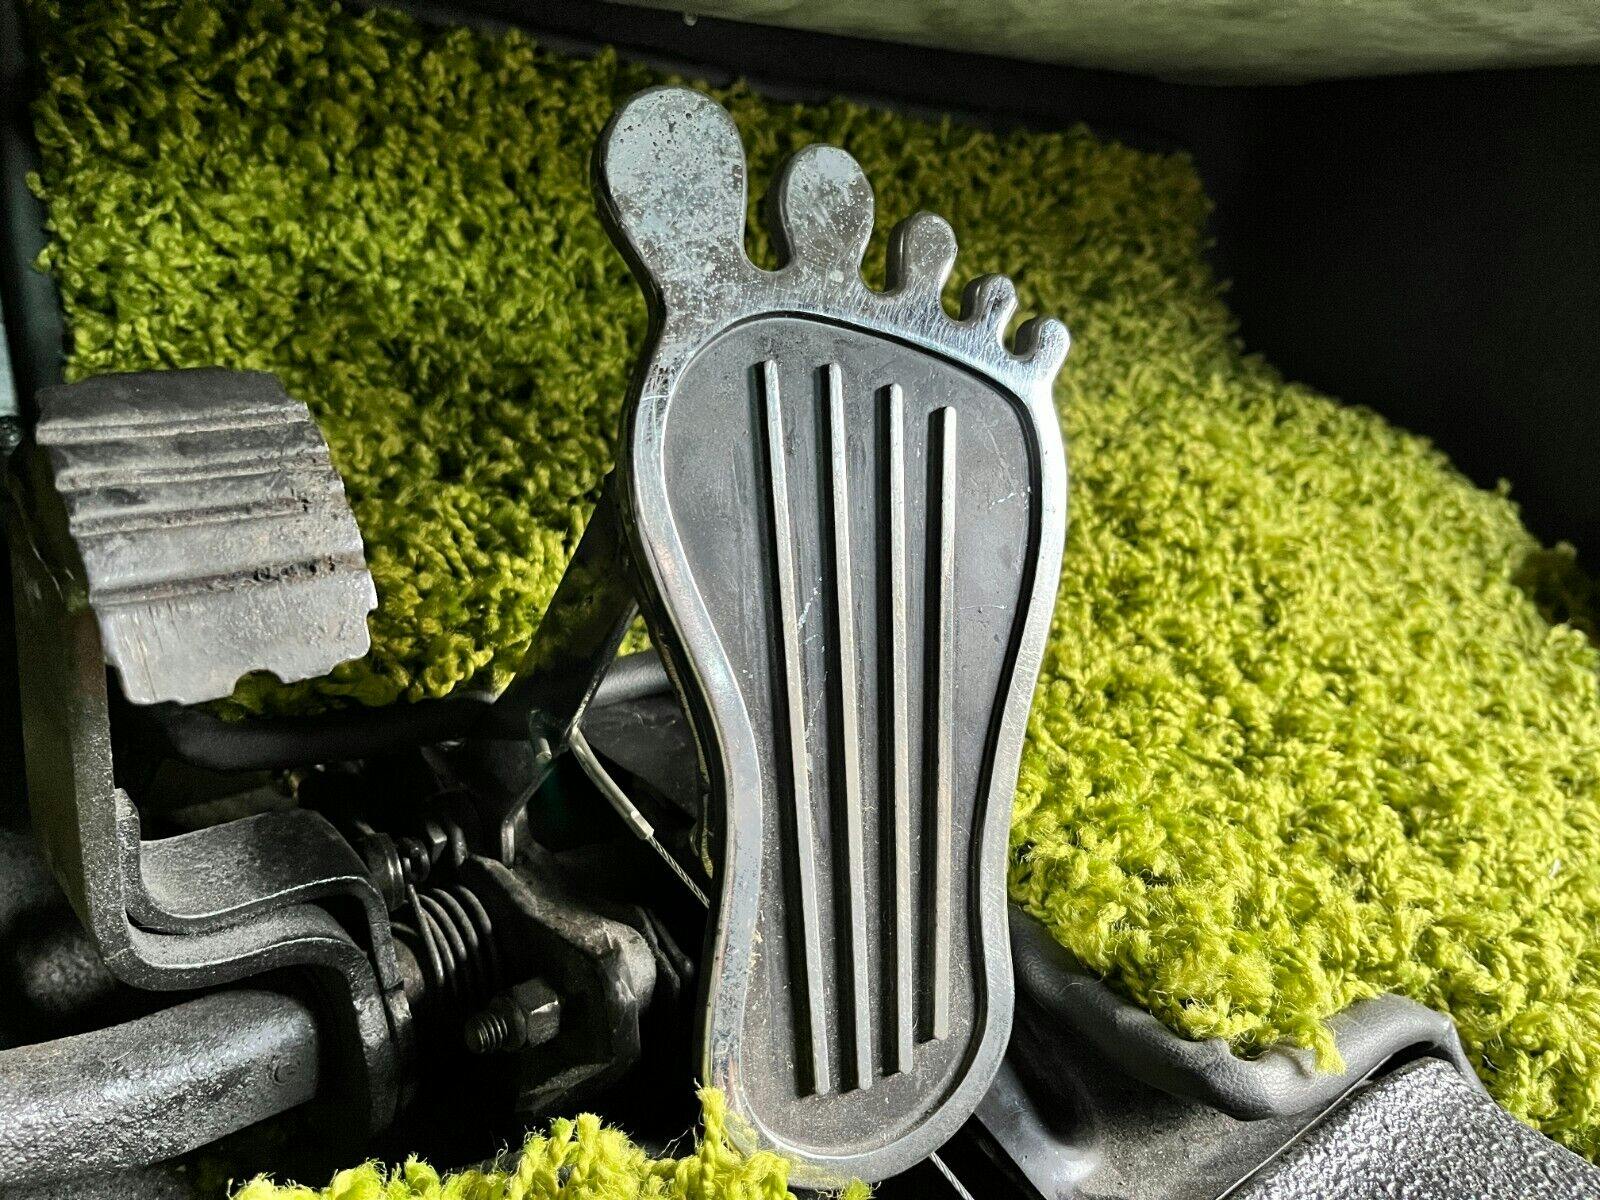 1971 Volkswagen Bus foot pedal